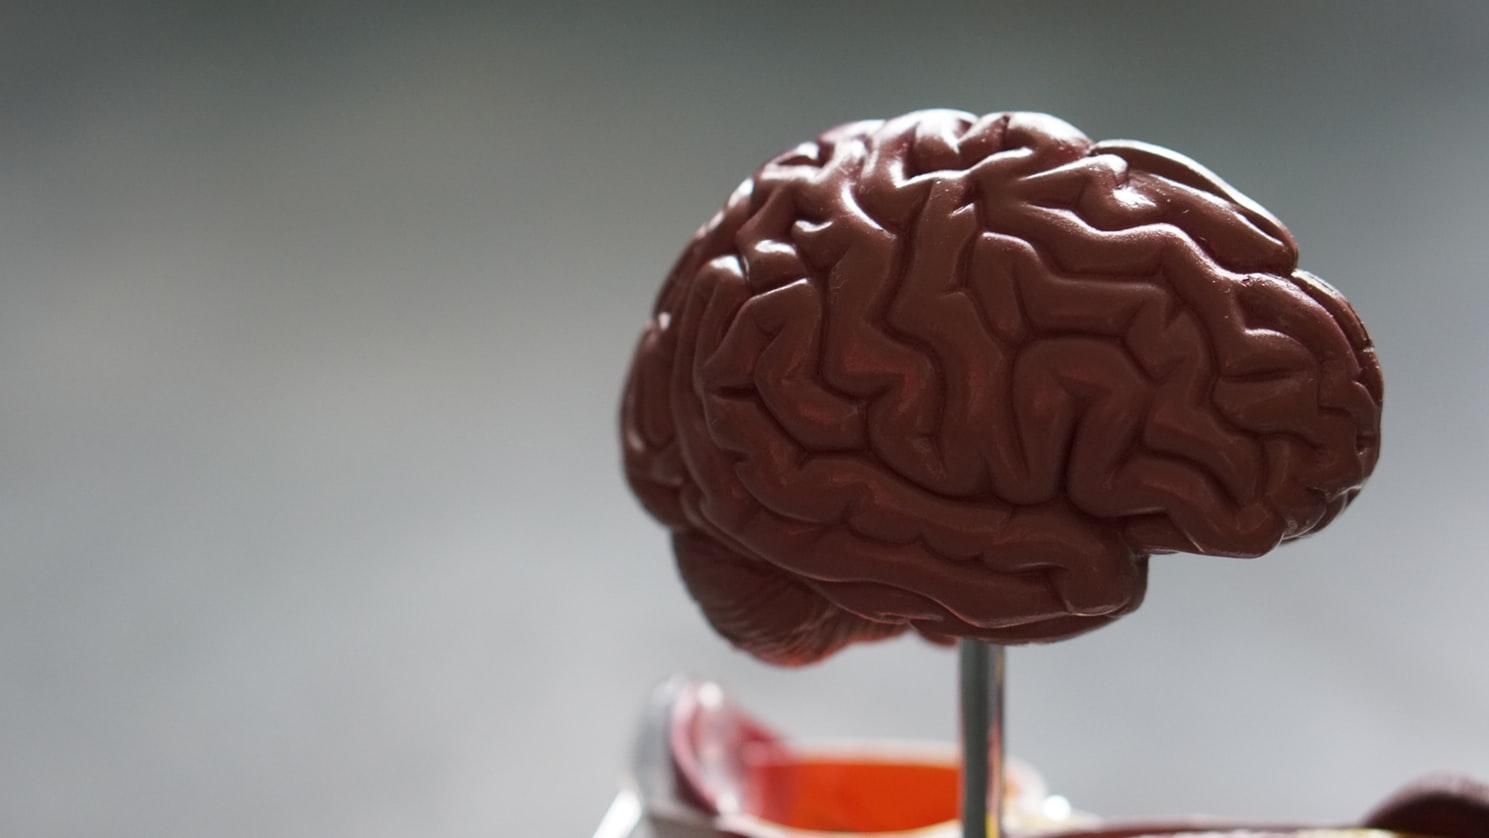 МРТ подтвердило: мозг преступников выглядит не так, как у обычных людей